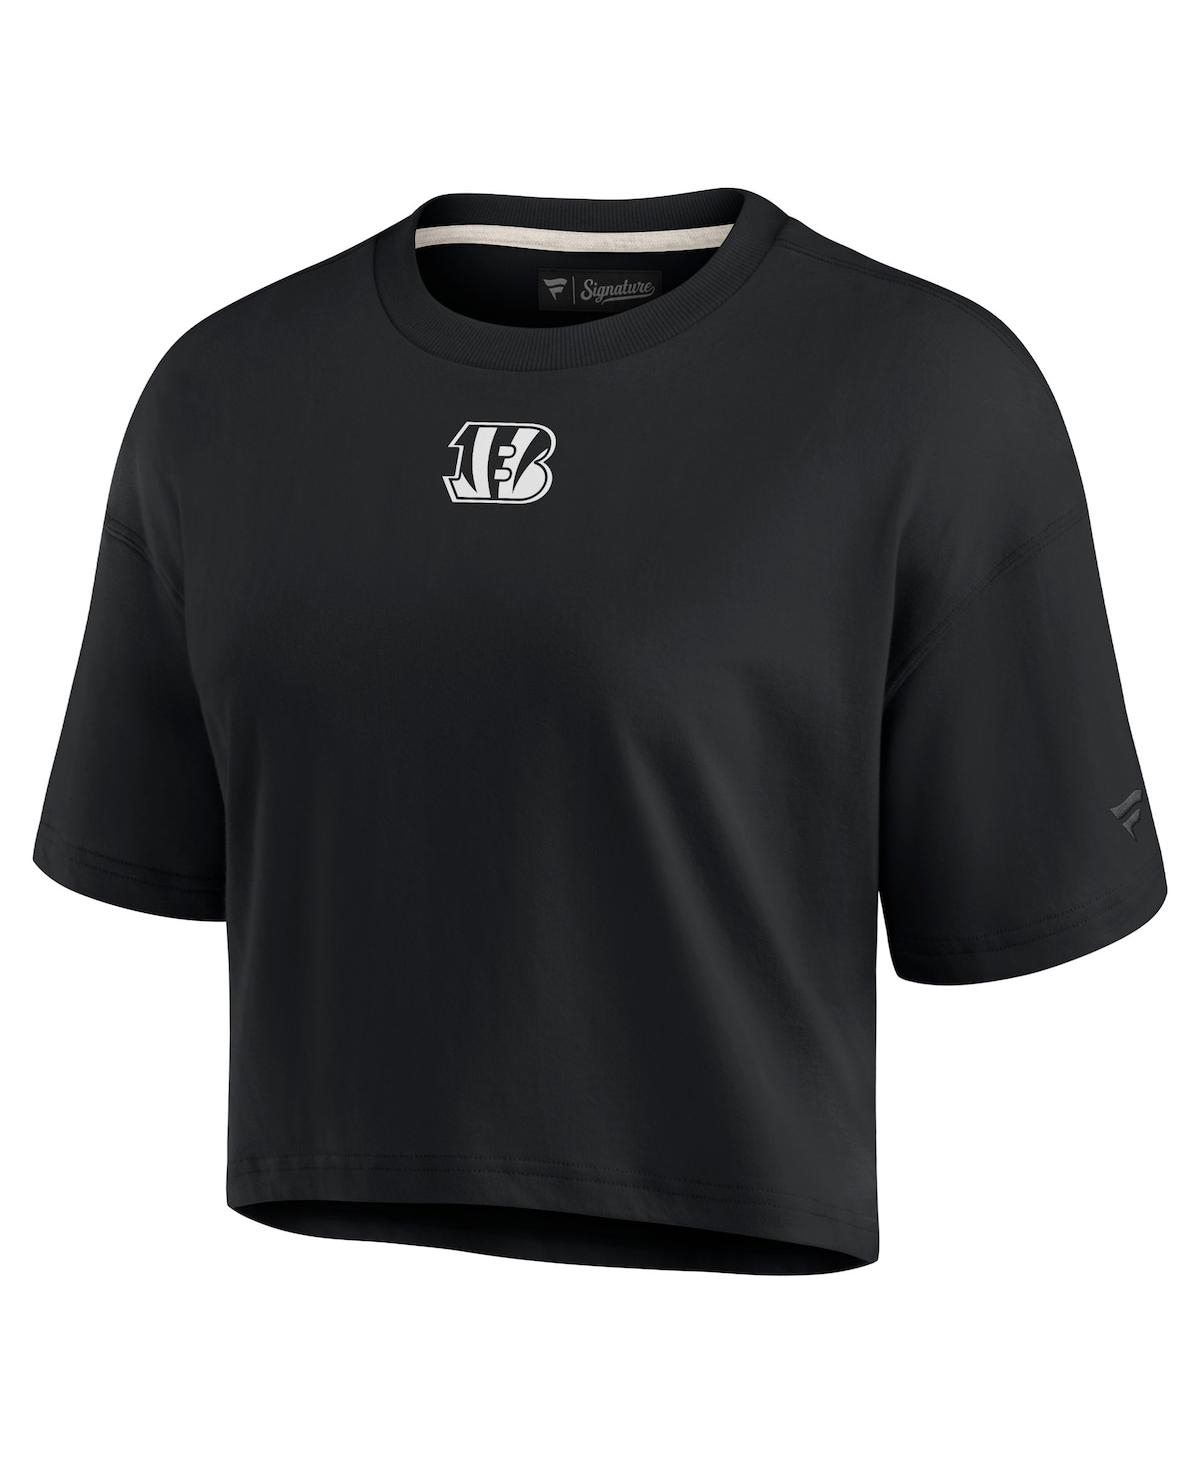 Shop Fanatics Signature Women's  Black Cincinnati Bengals Super Soft Short Sleeve Cropped T-shirt